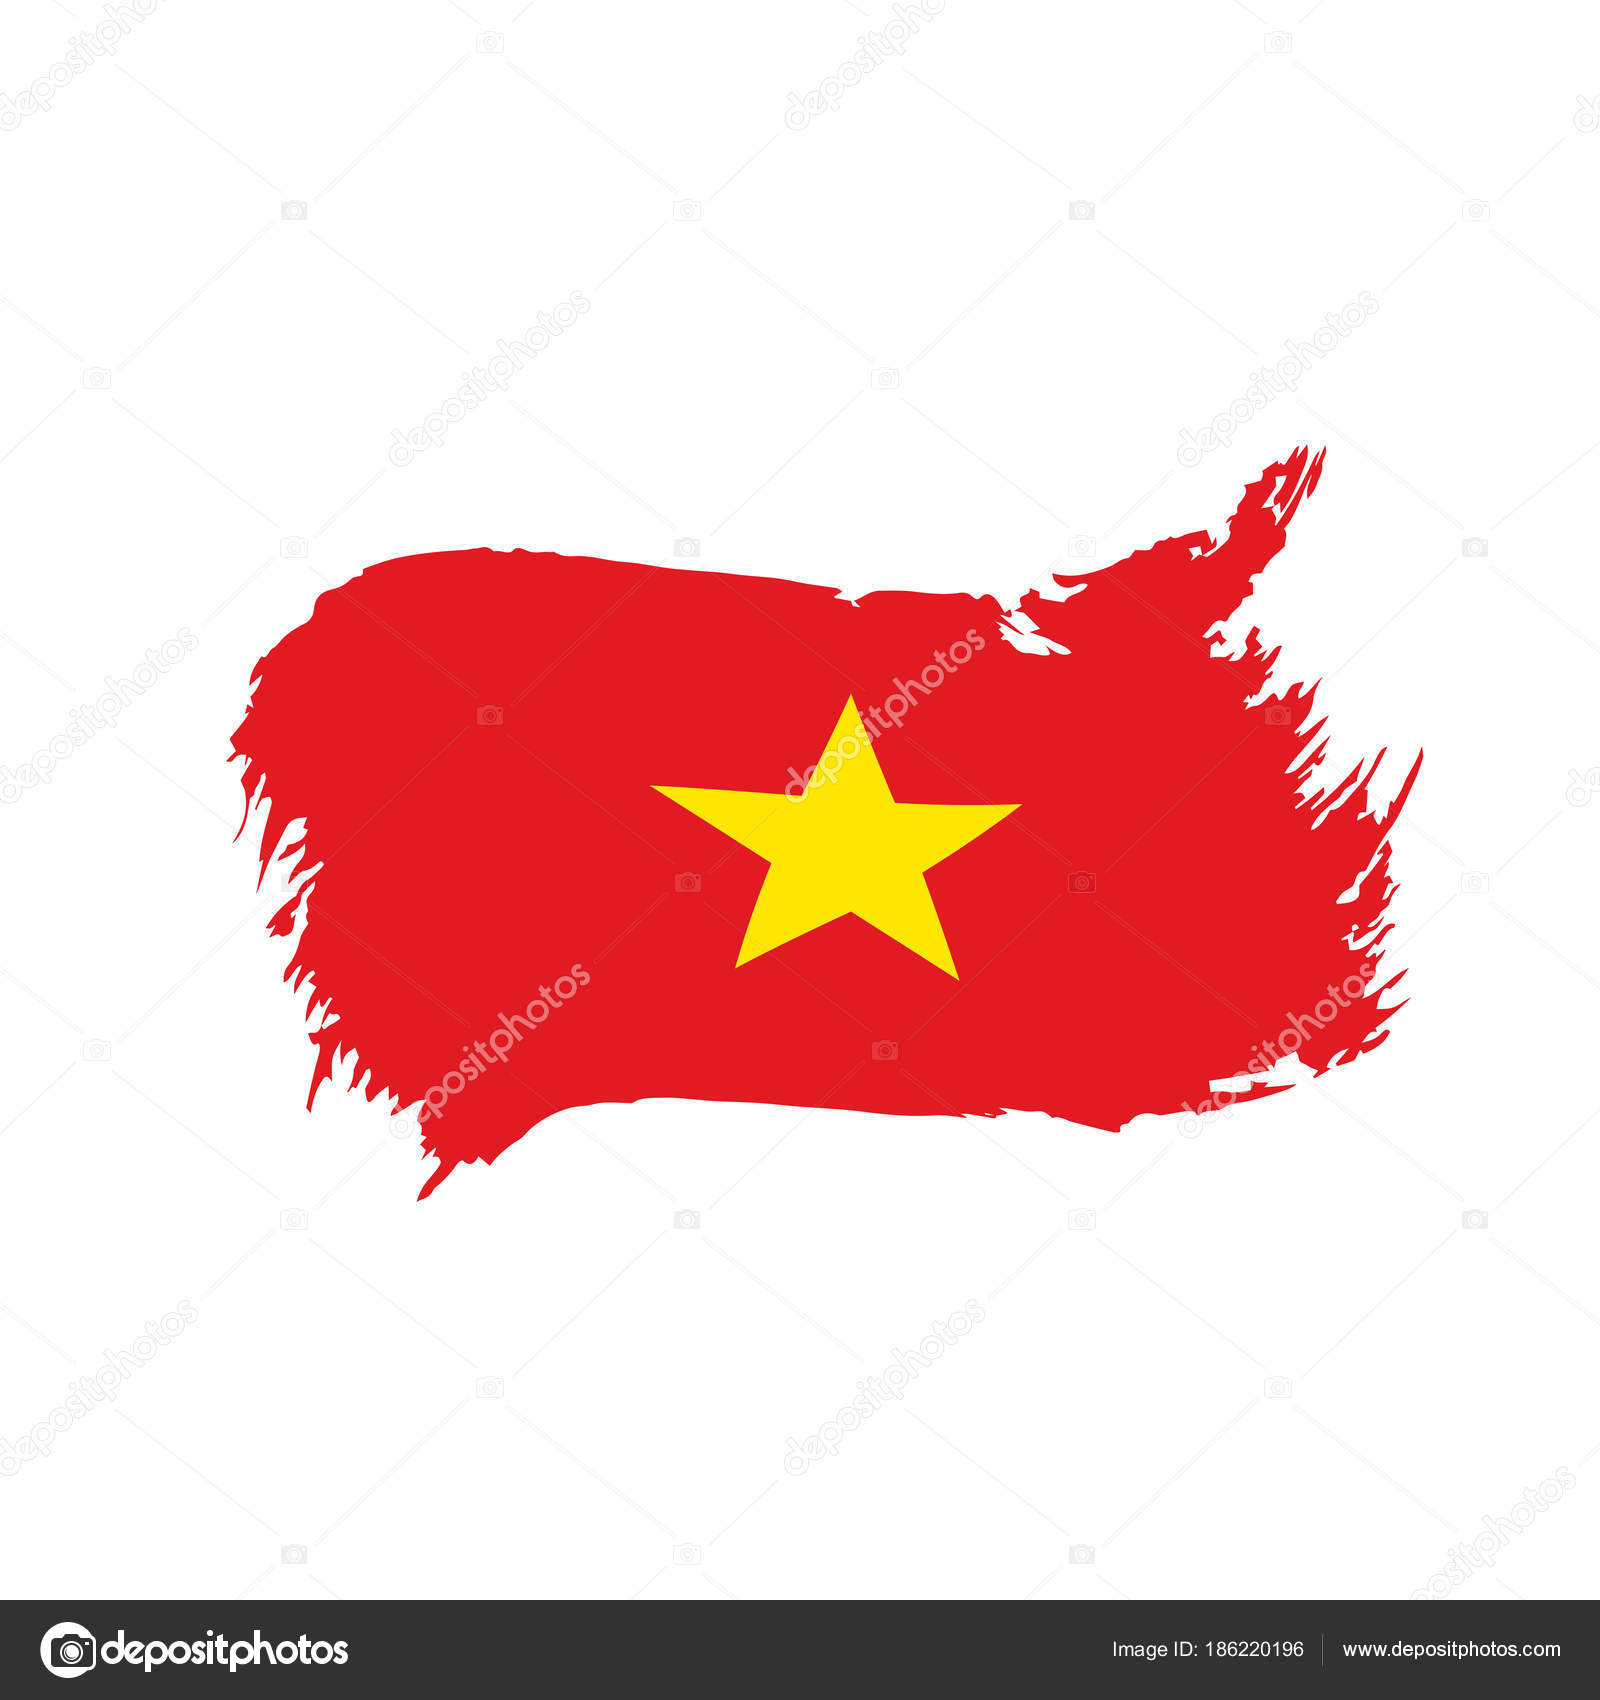 かわいいディズニー画像 ユニークベトナム 国旗 フリー